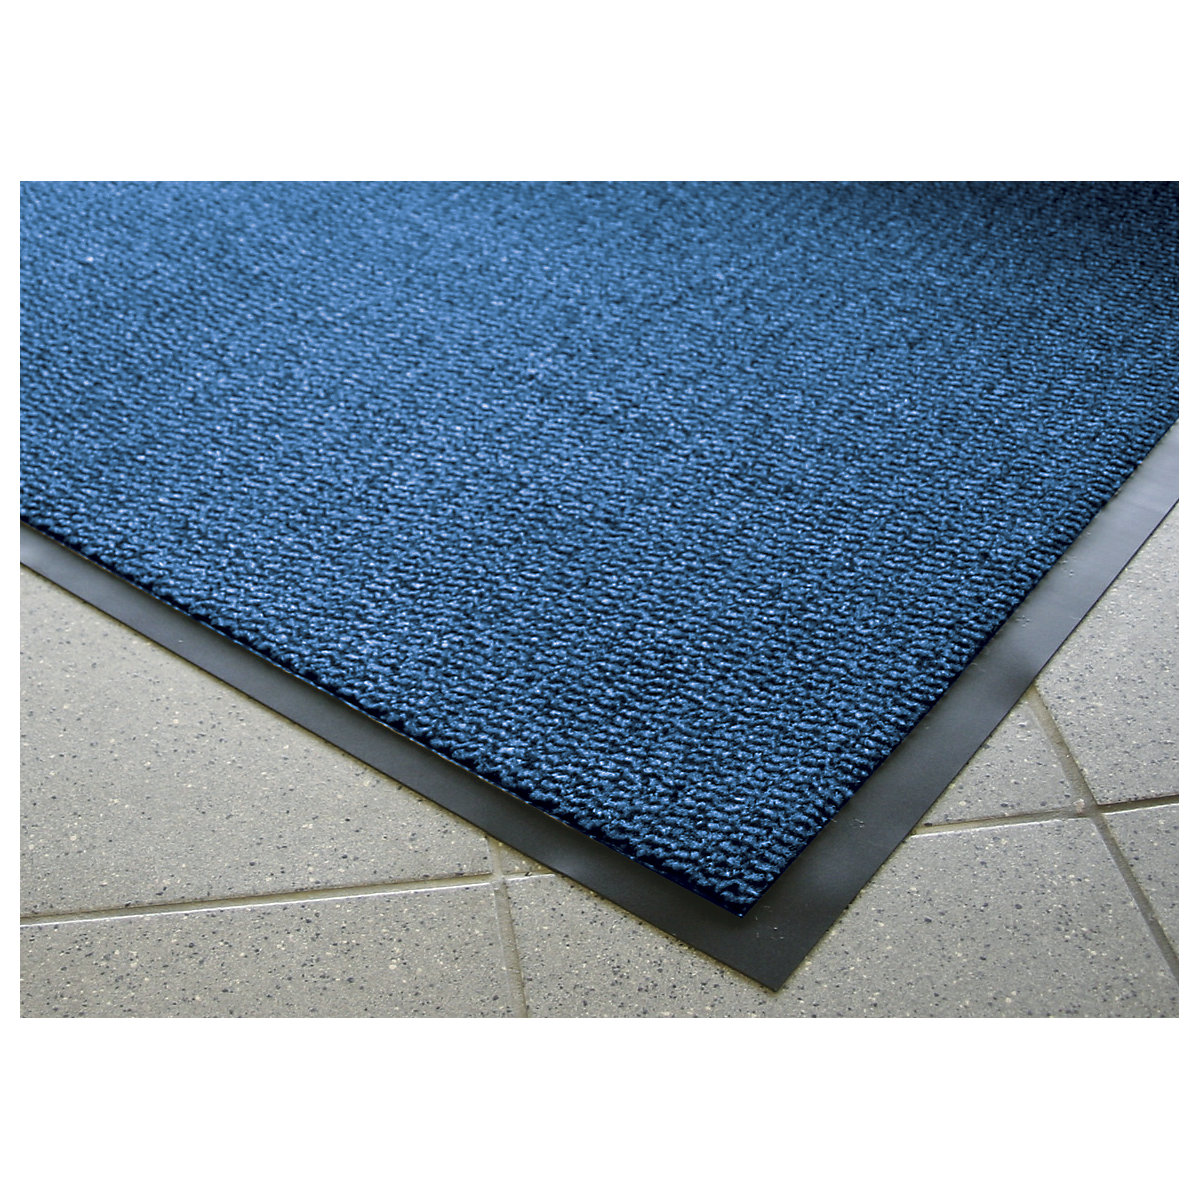 Entrance matting for indoor use, polypropylene pile – COBA, LxW 1800 x 1200 mm, black / blue-7